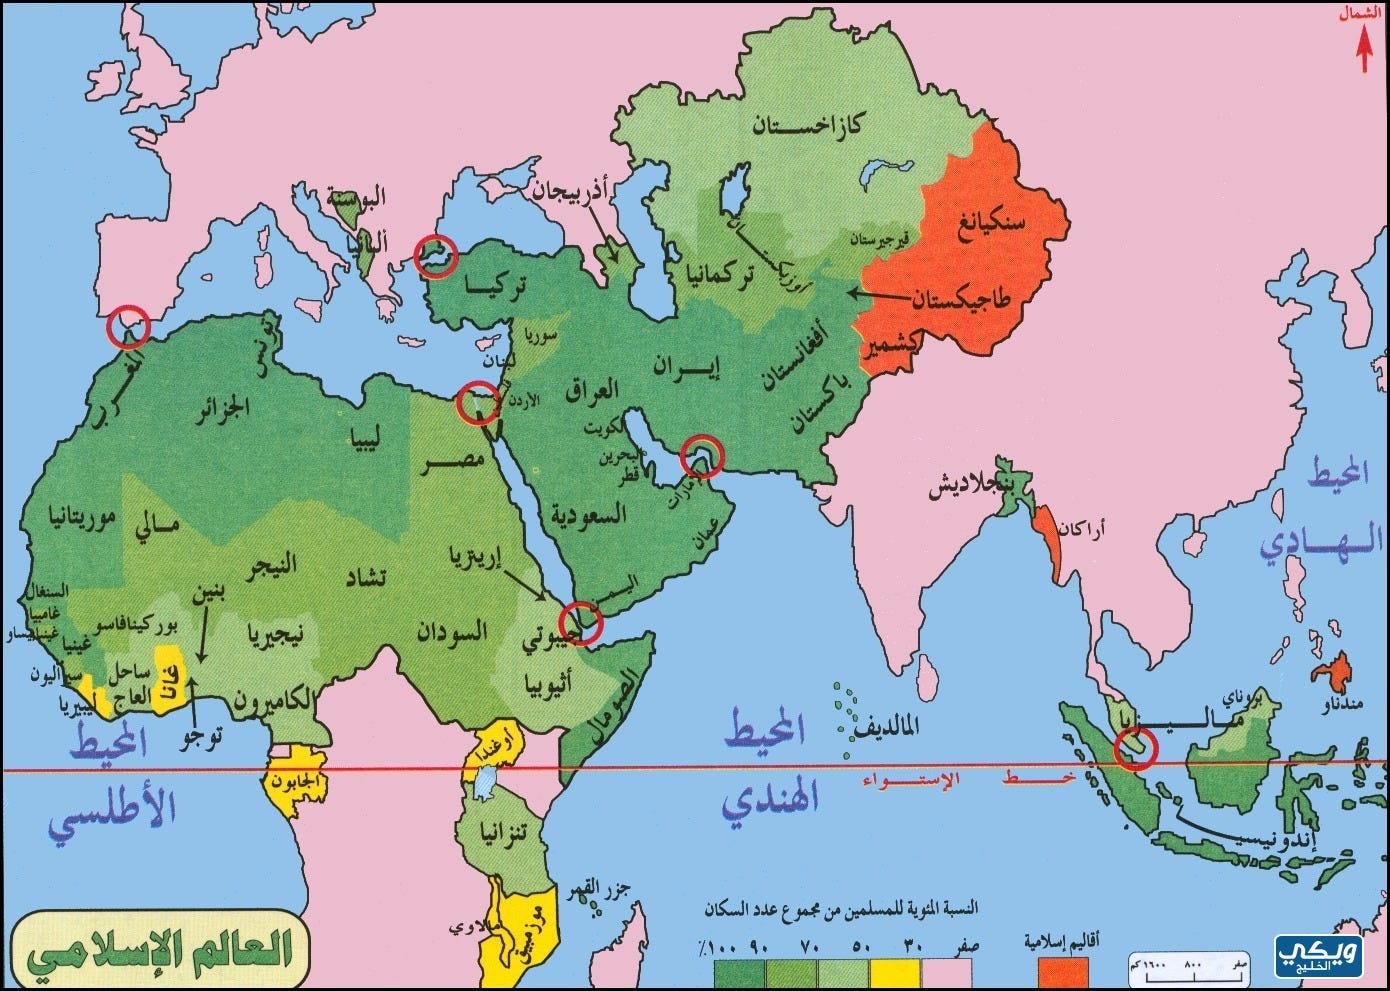 خريطة الوطن العربي والعالم | by ويكي الخليج | Medium